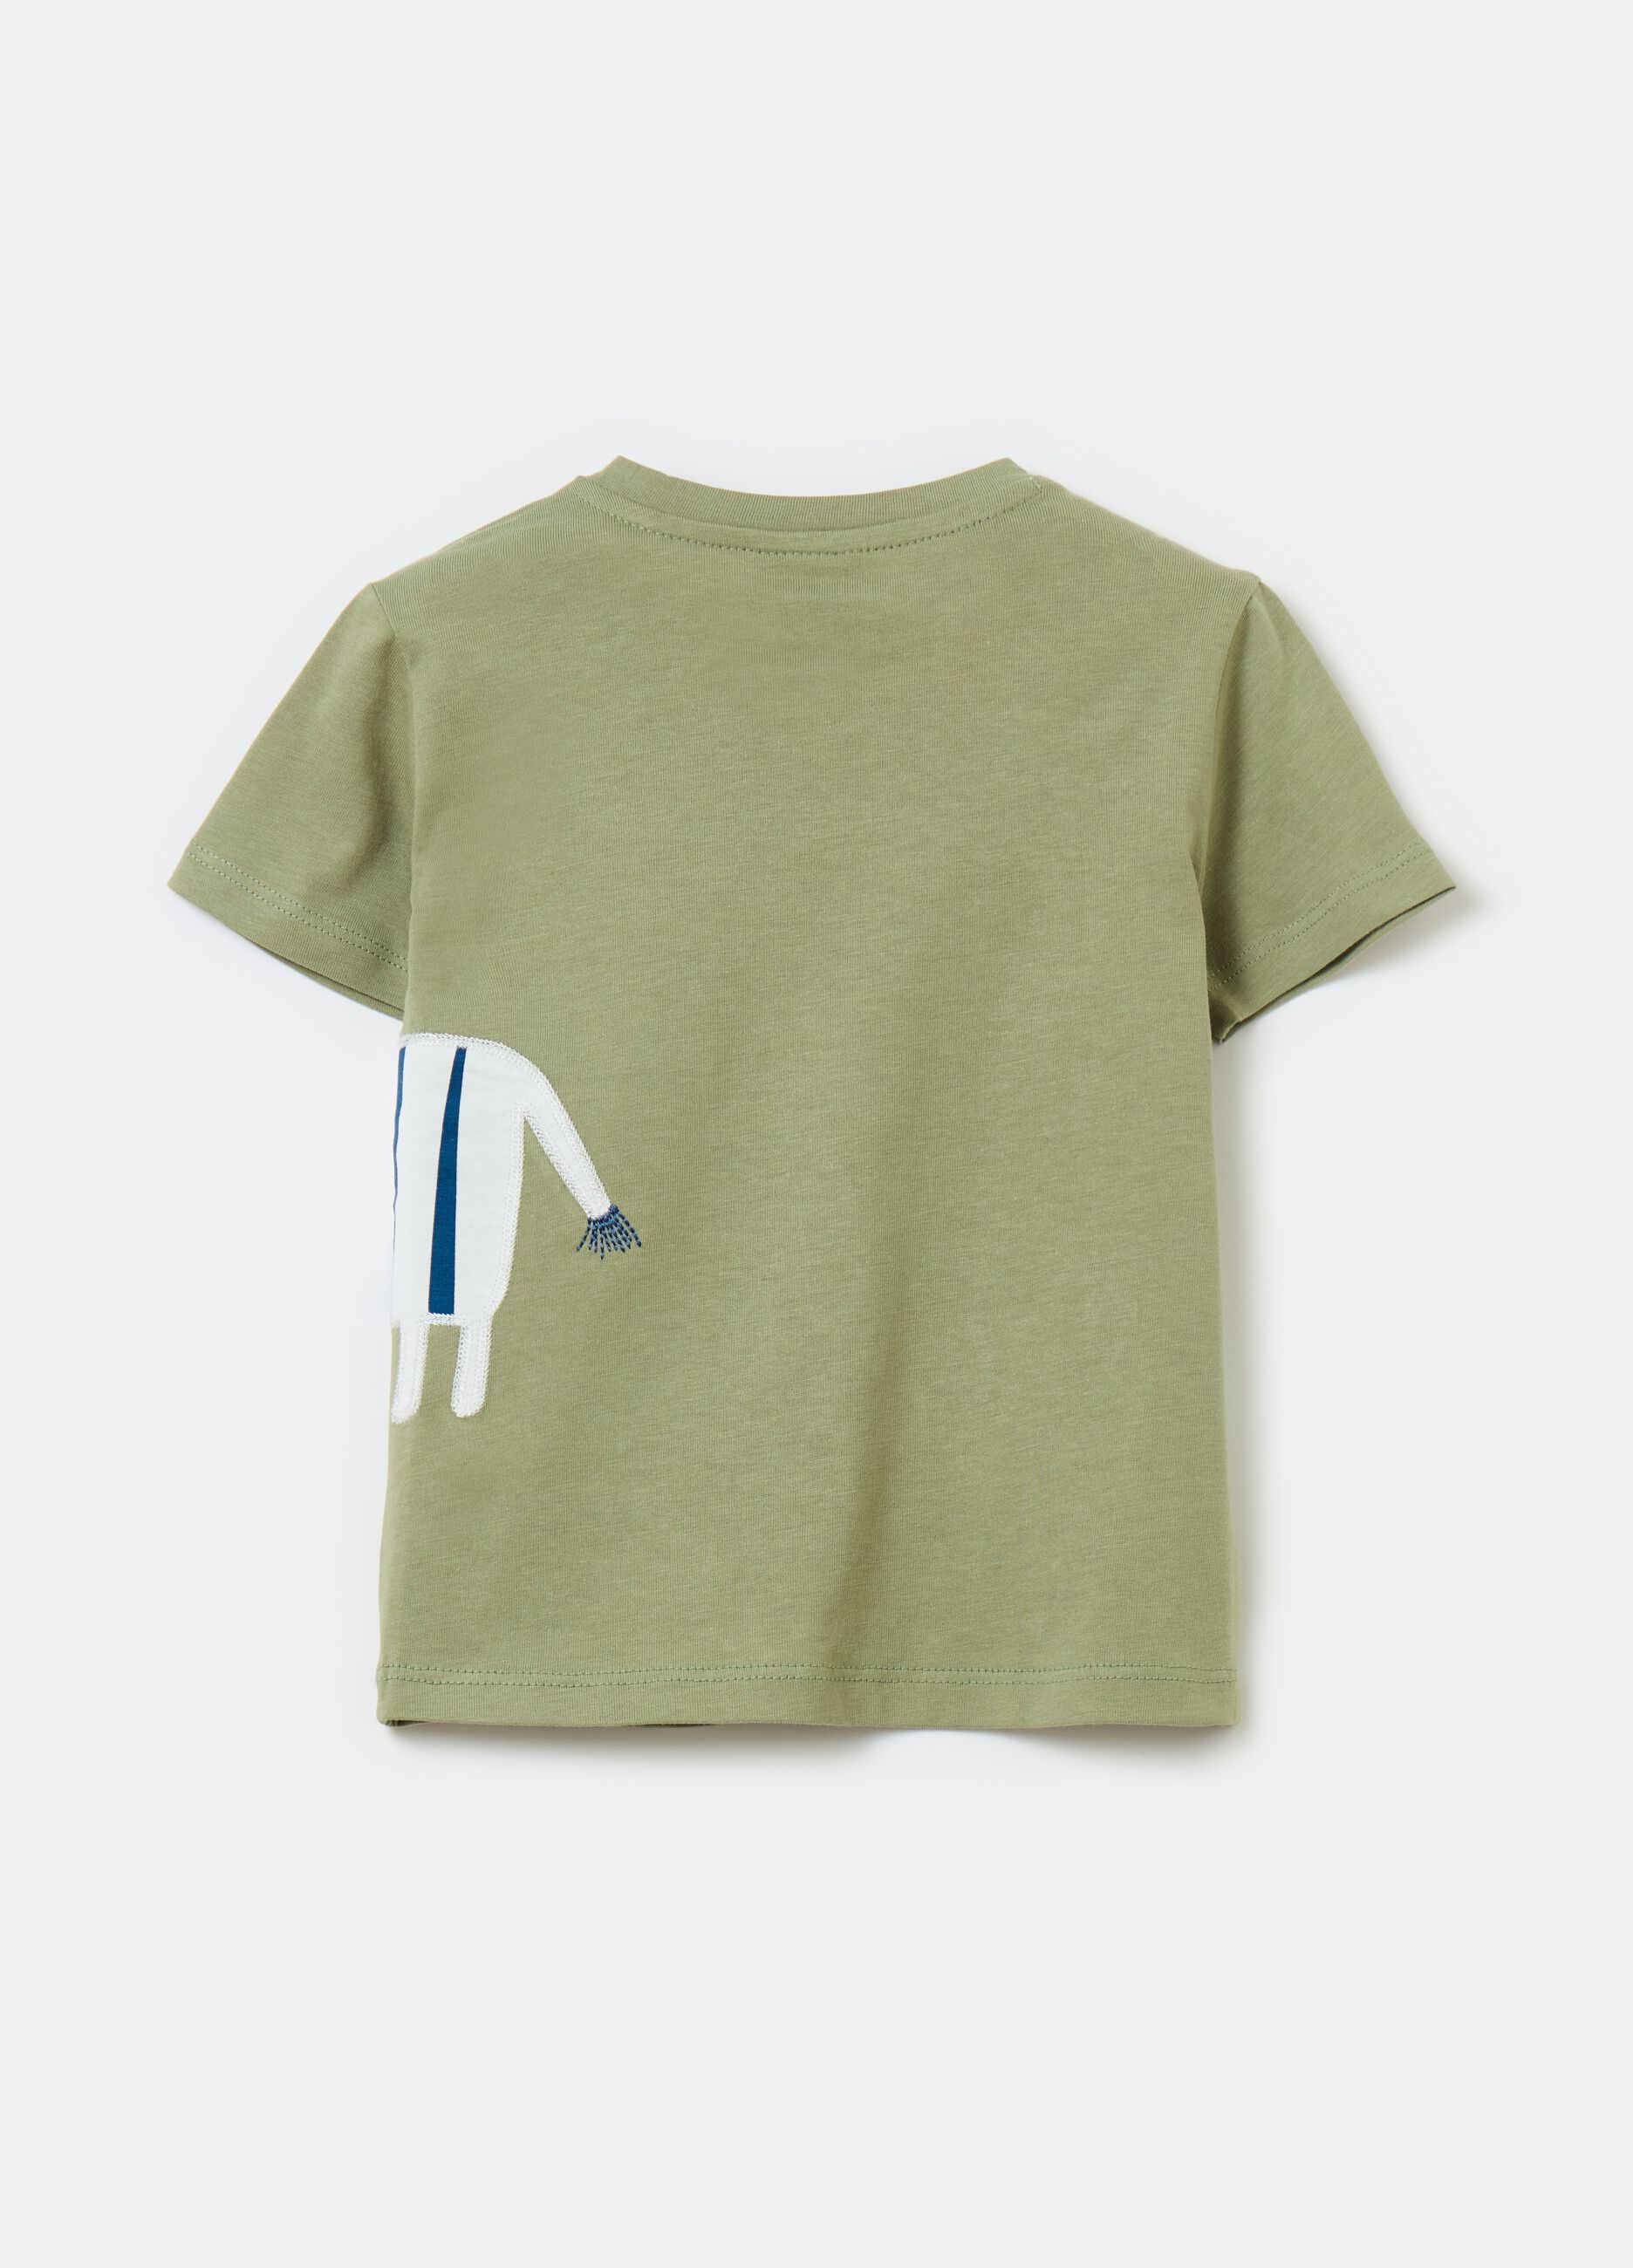 Camiseta de algodón con bordado y parche cebra